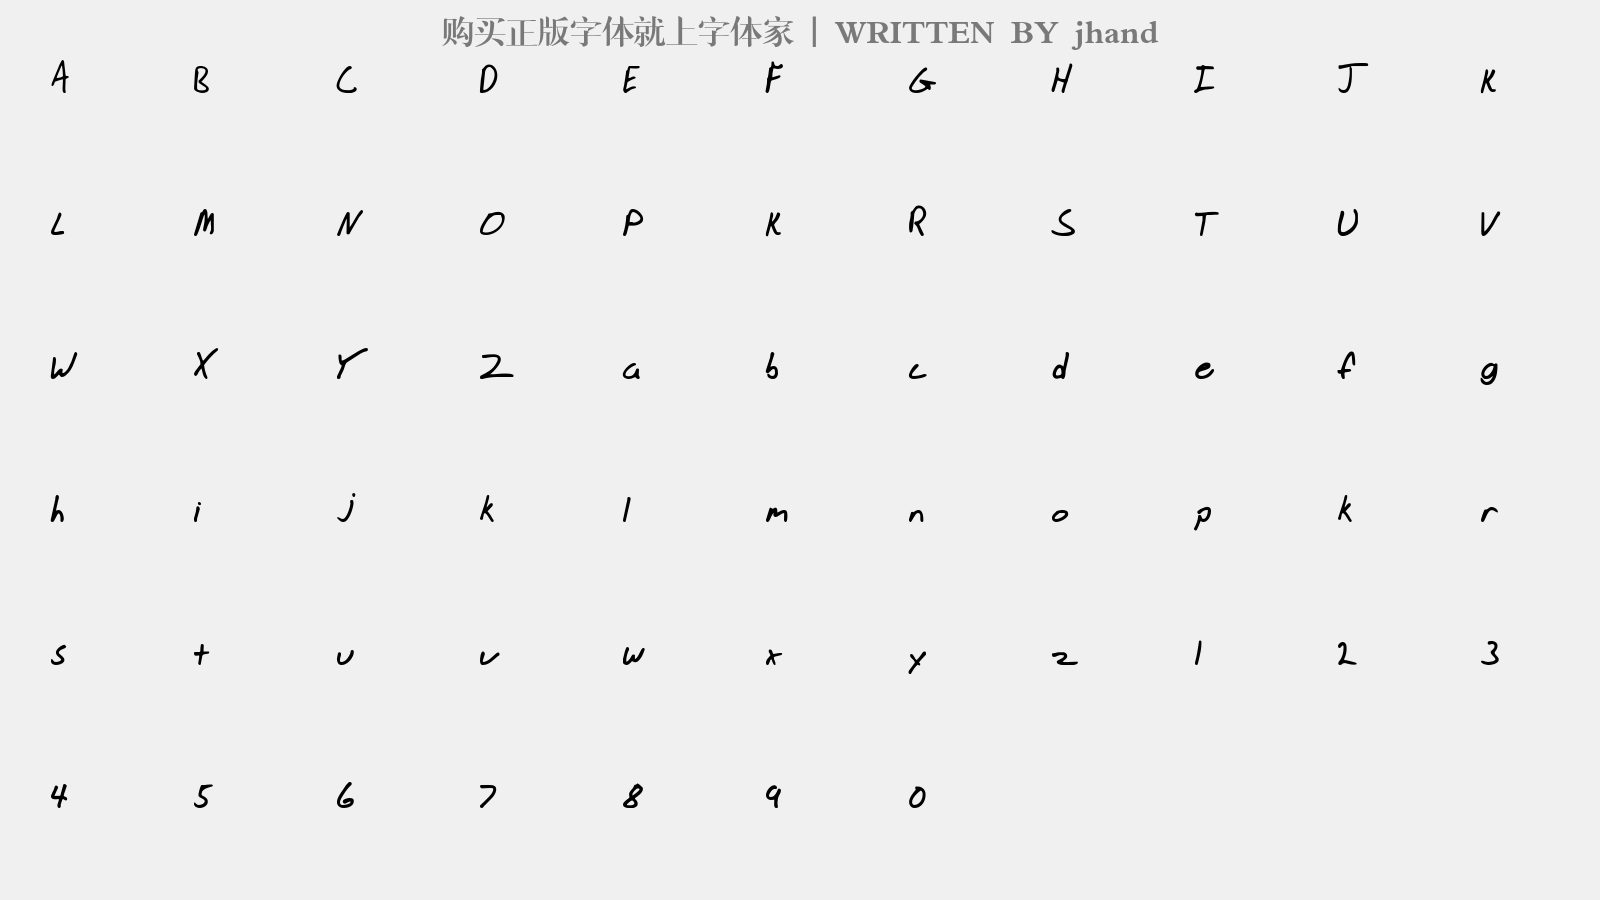 jhand - 大写字母/小写字母/数字